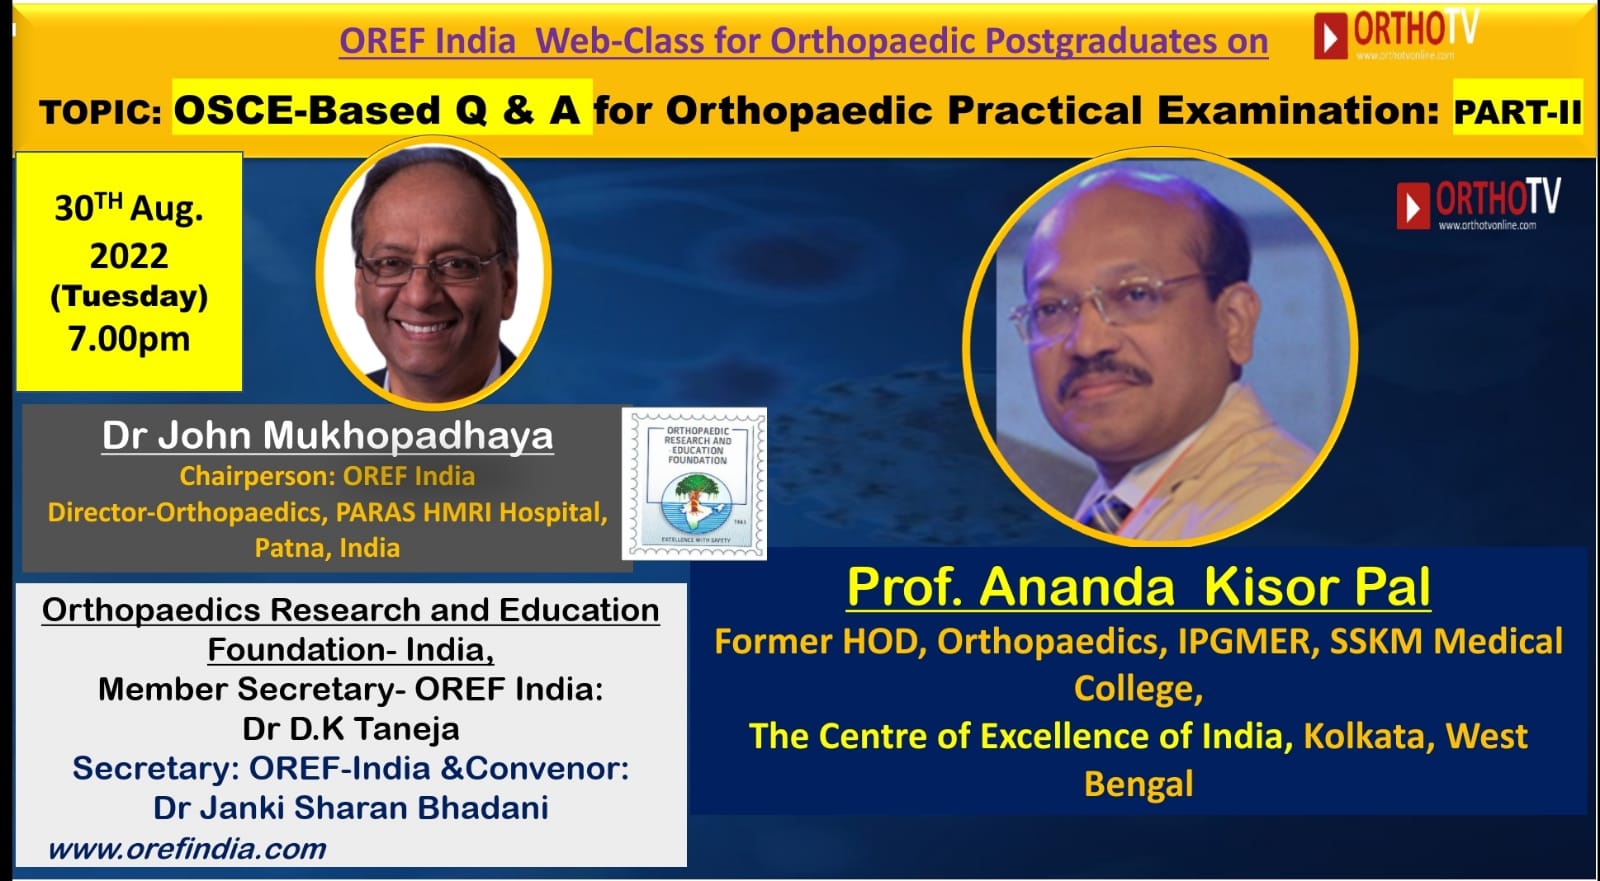 OREF India Webclass for Orthopaedic Postgraduates on OrthoTV - OSCE-based Q and A for Practical Examination: Orthopaedics (Part-II)